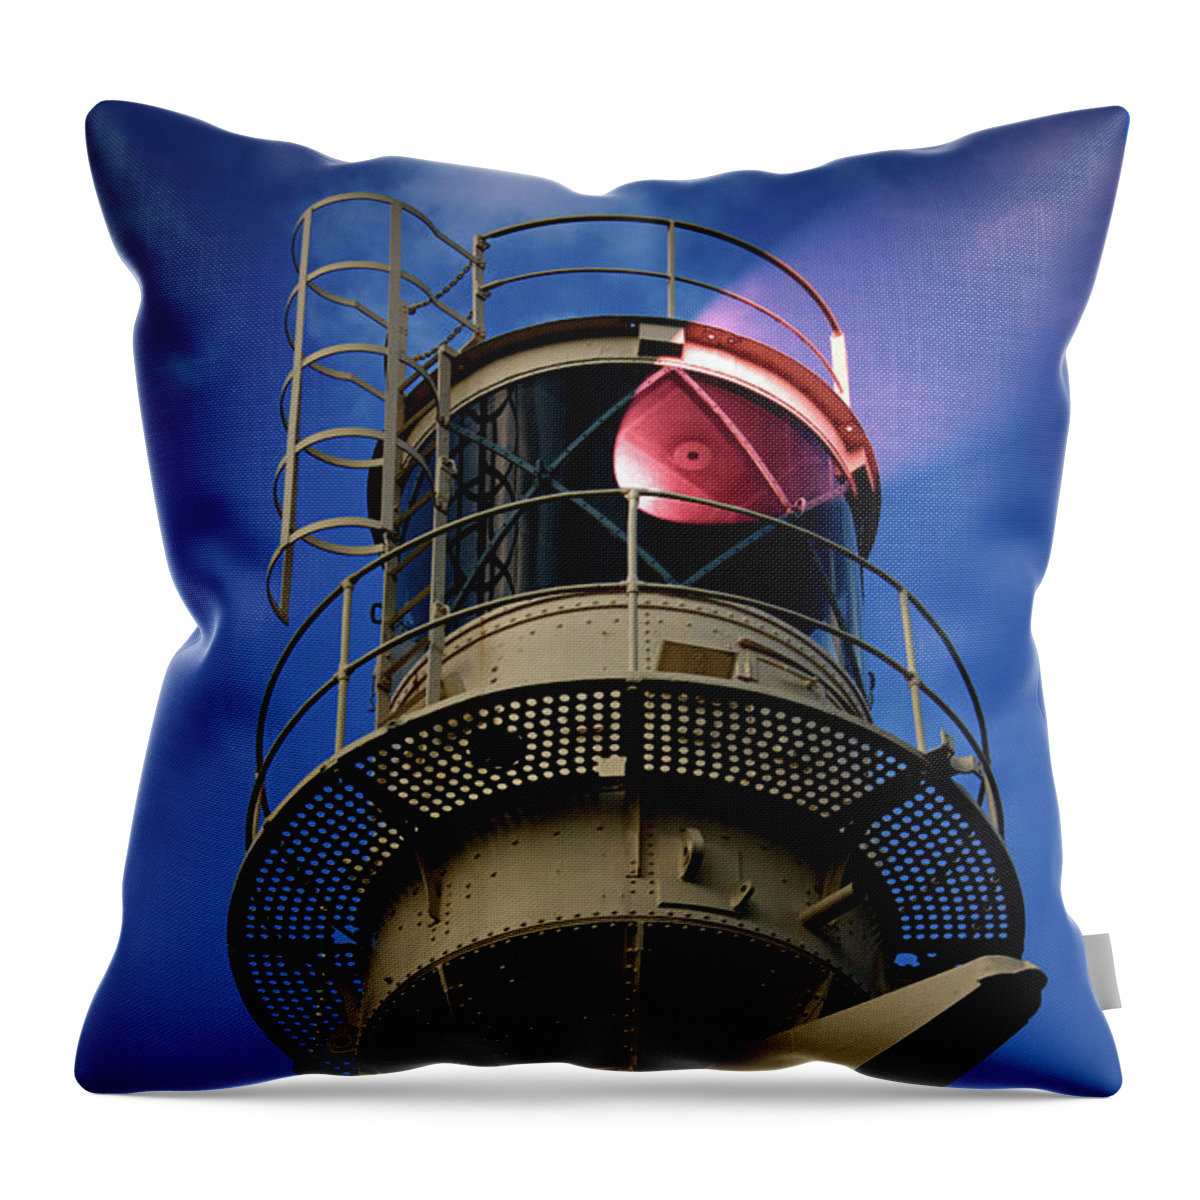 Lighthouse Throw Pillow featuring the photograph Beam of light from a lighthouse. by Bernhard Schaffer